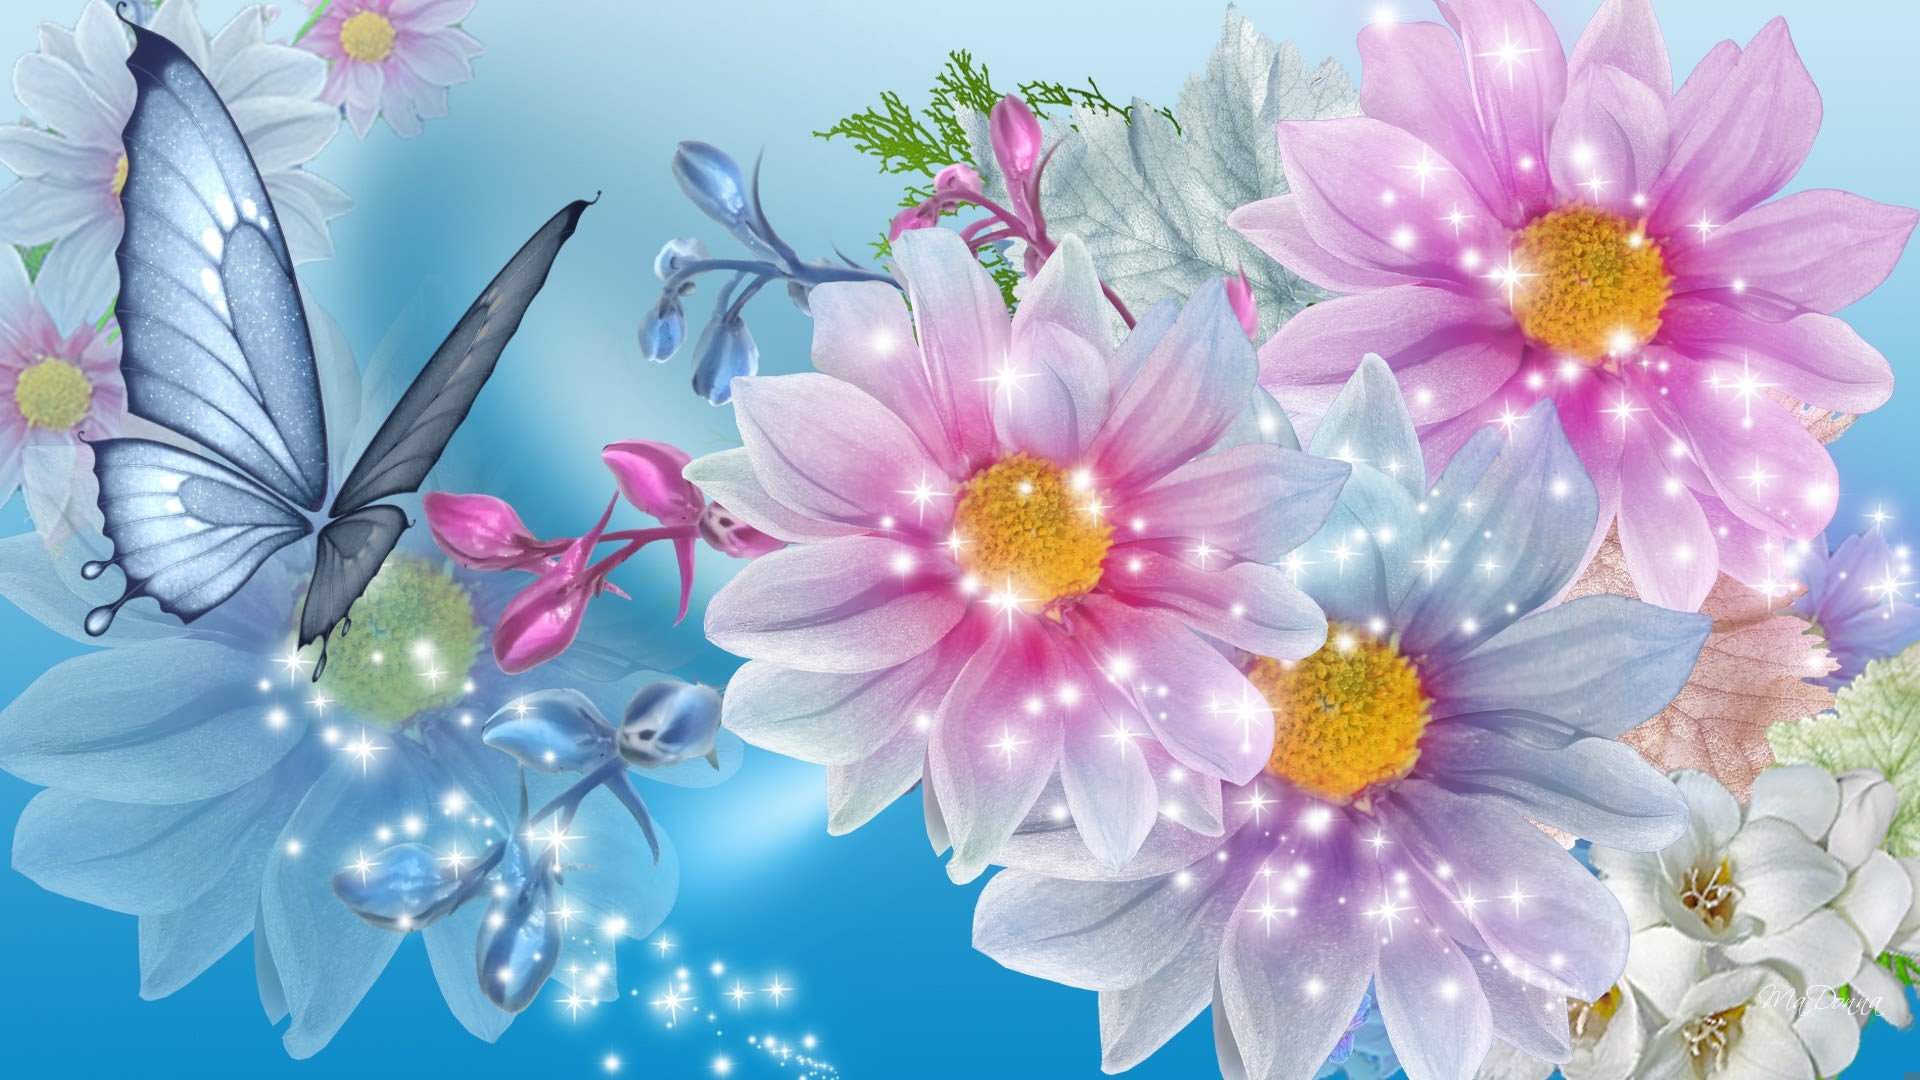 Flower Wallpaper For Your Desktop